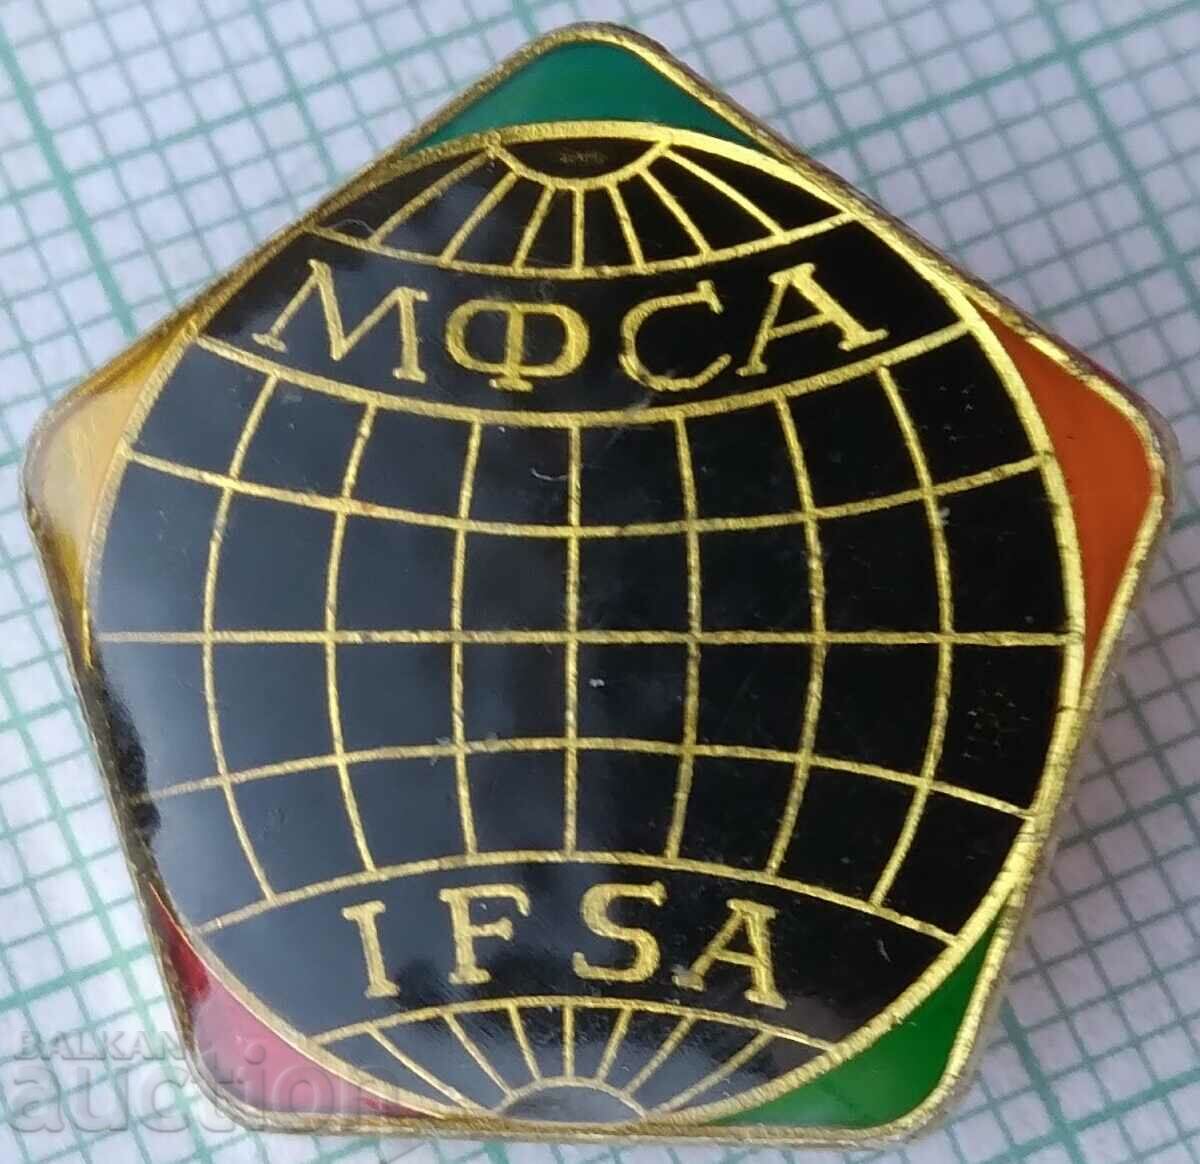 16246 Fondul Internațional IFSA pentru salvarea lui Aral IFSA